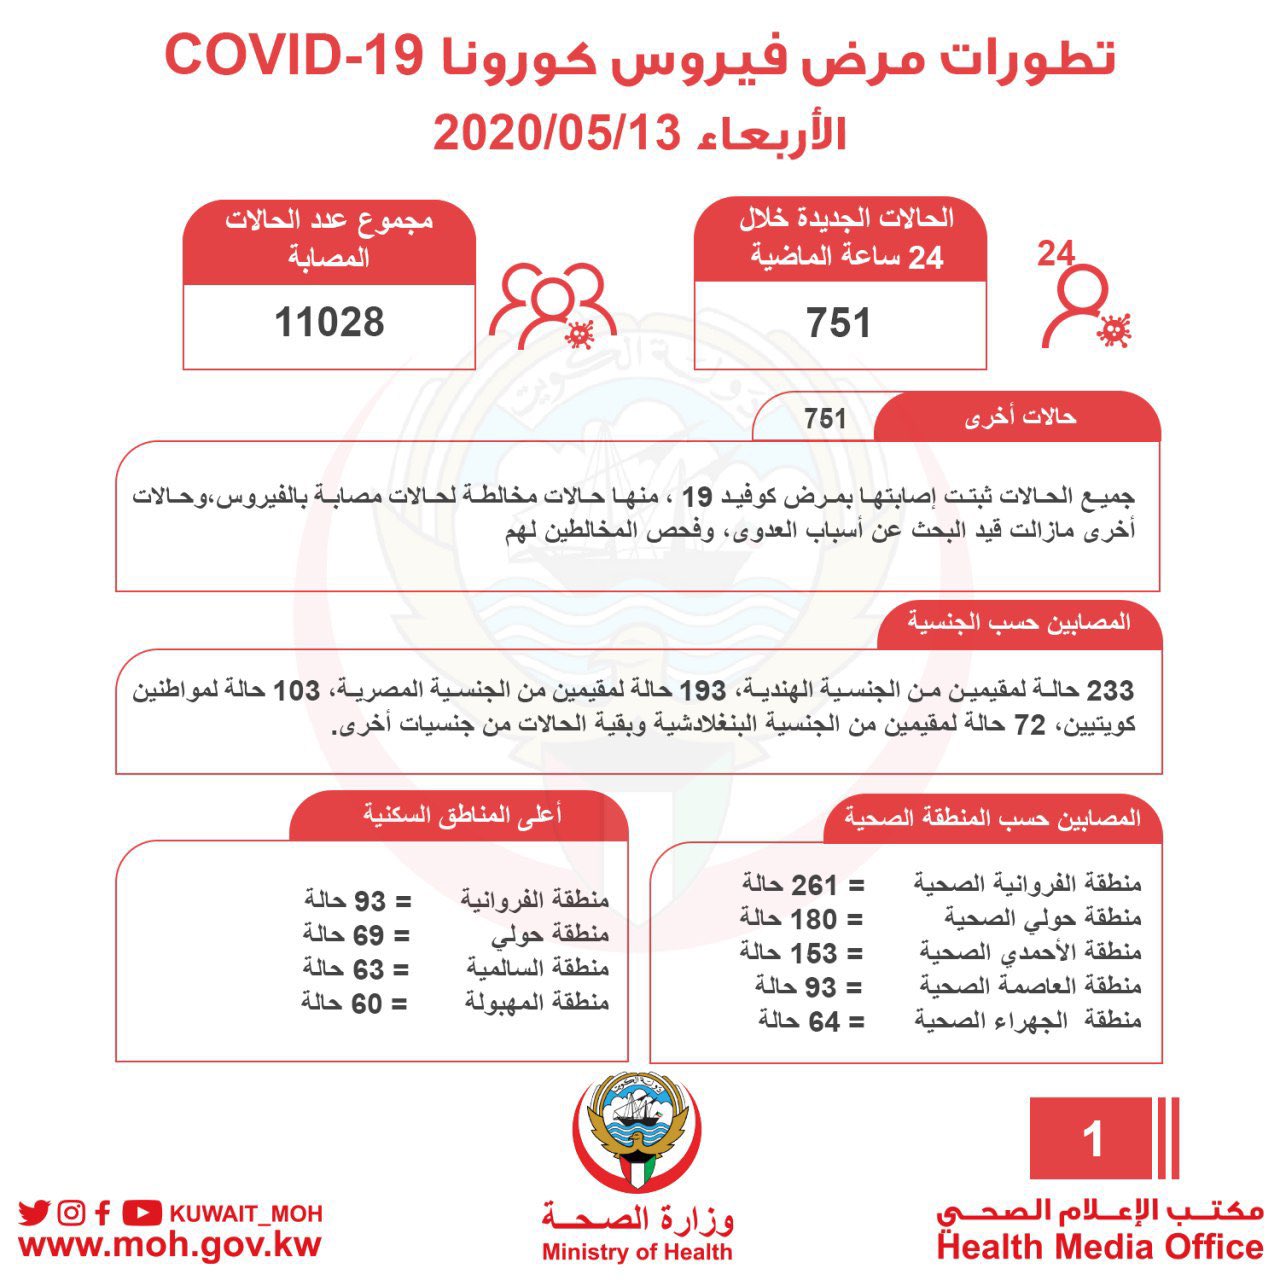 حالات فيروس كورونا في الكويت اليوم 13-5-2020